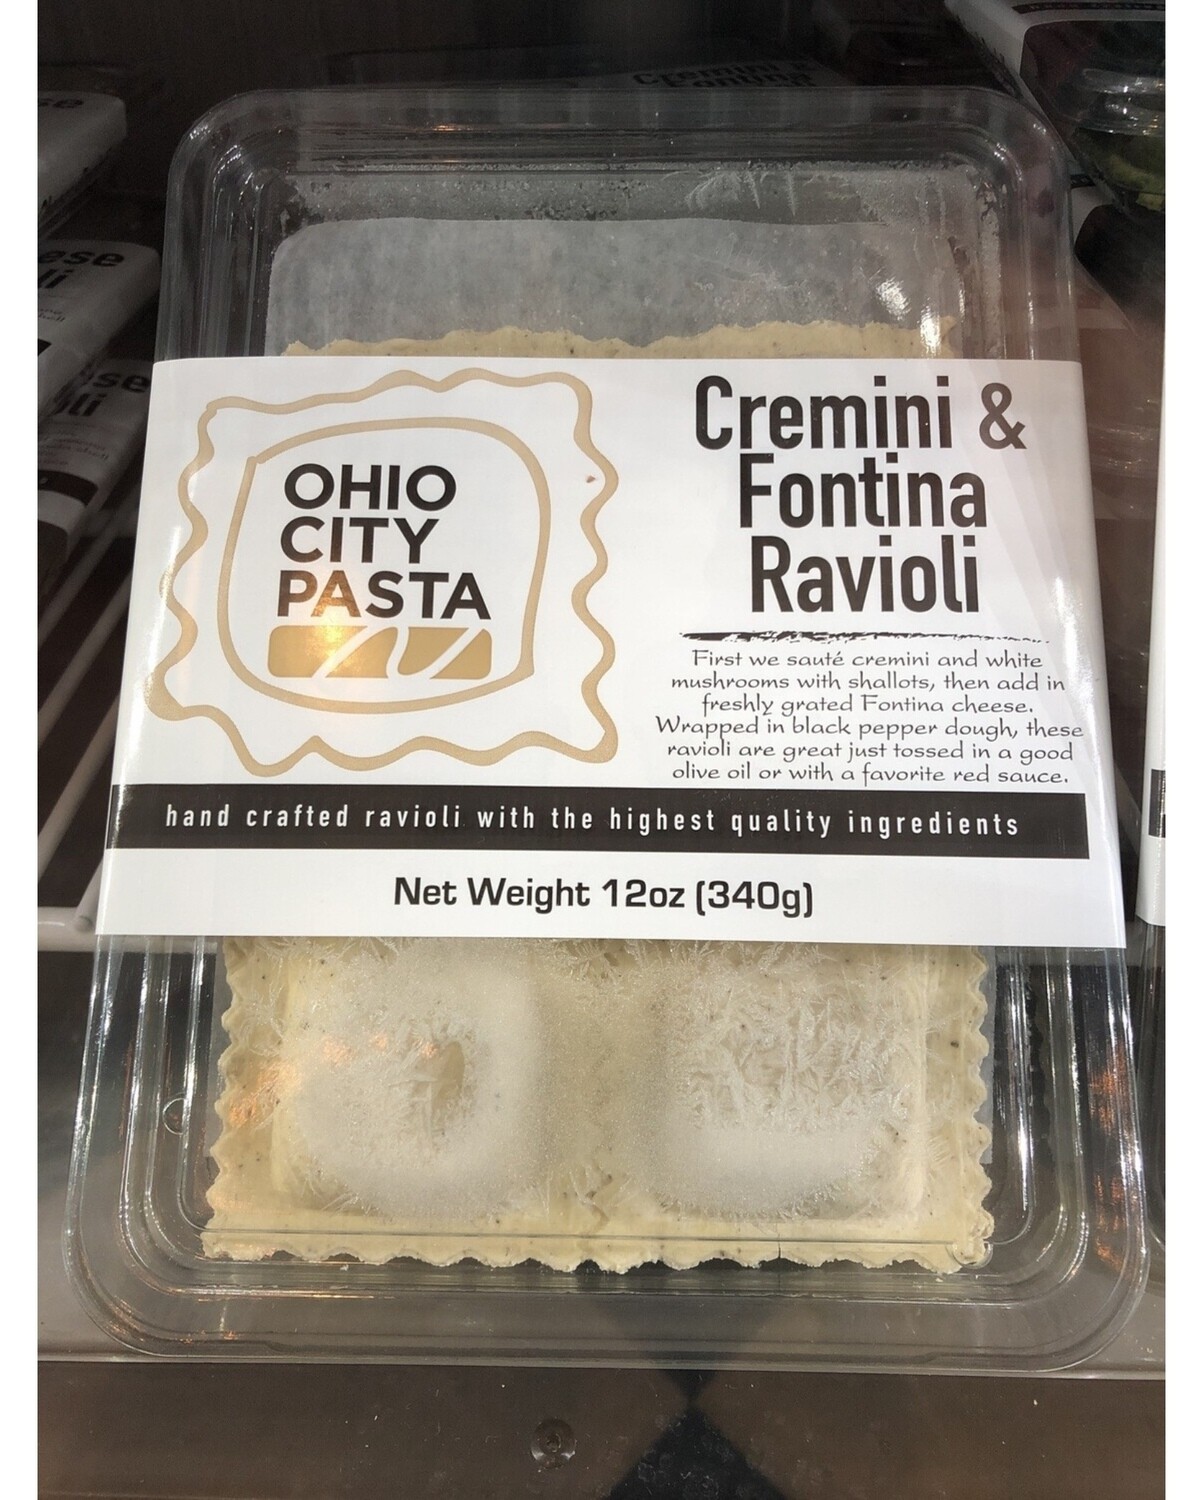 Ohio City Pasta Cremini and Fontina